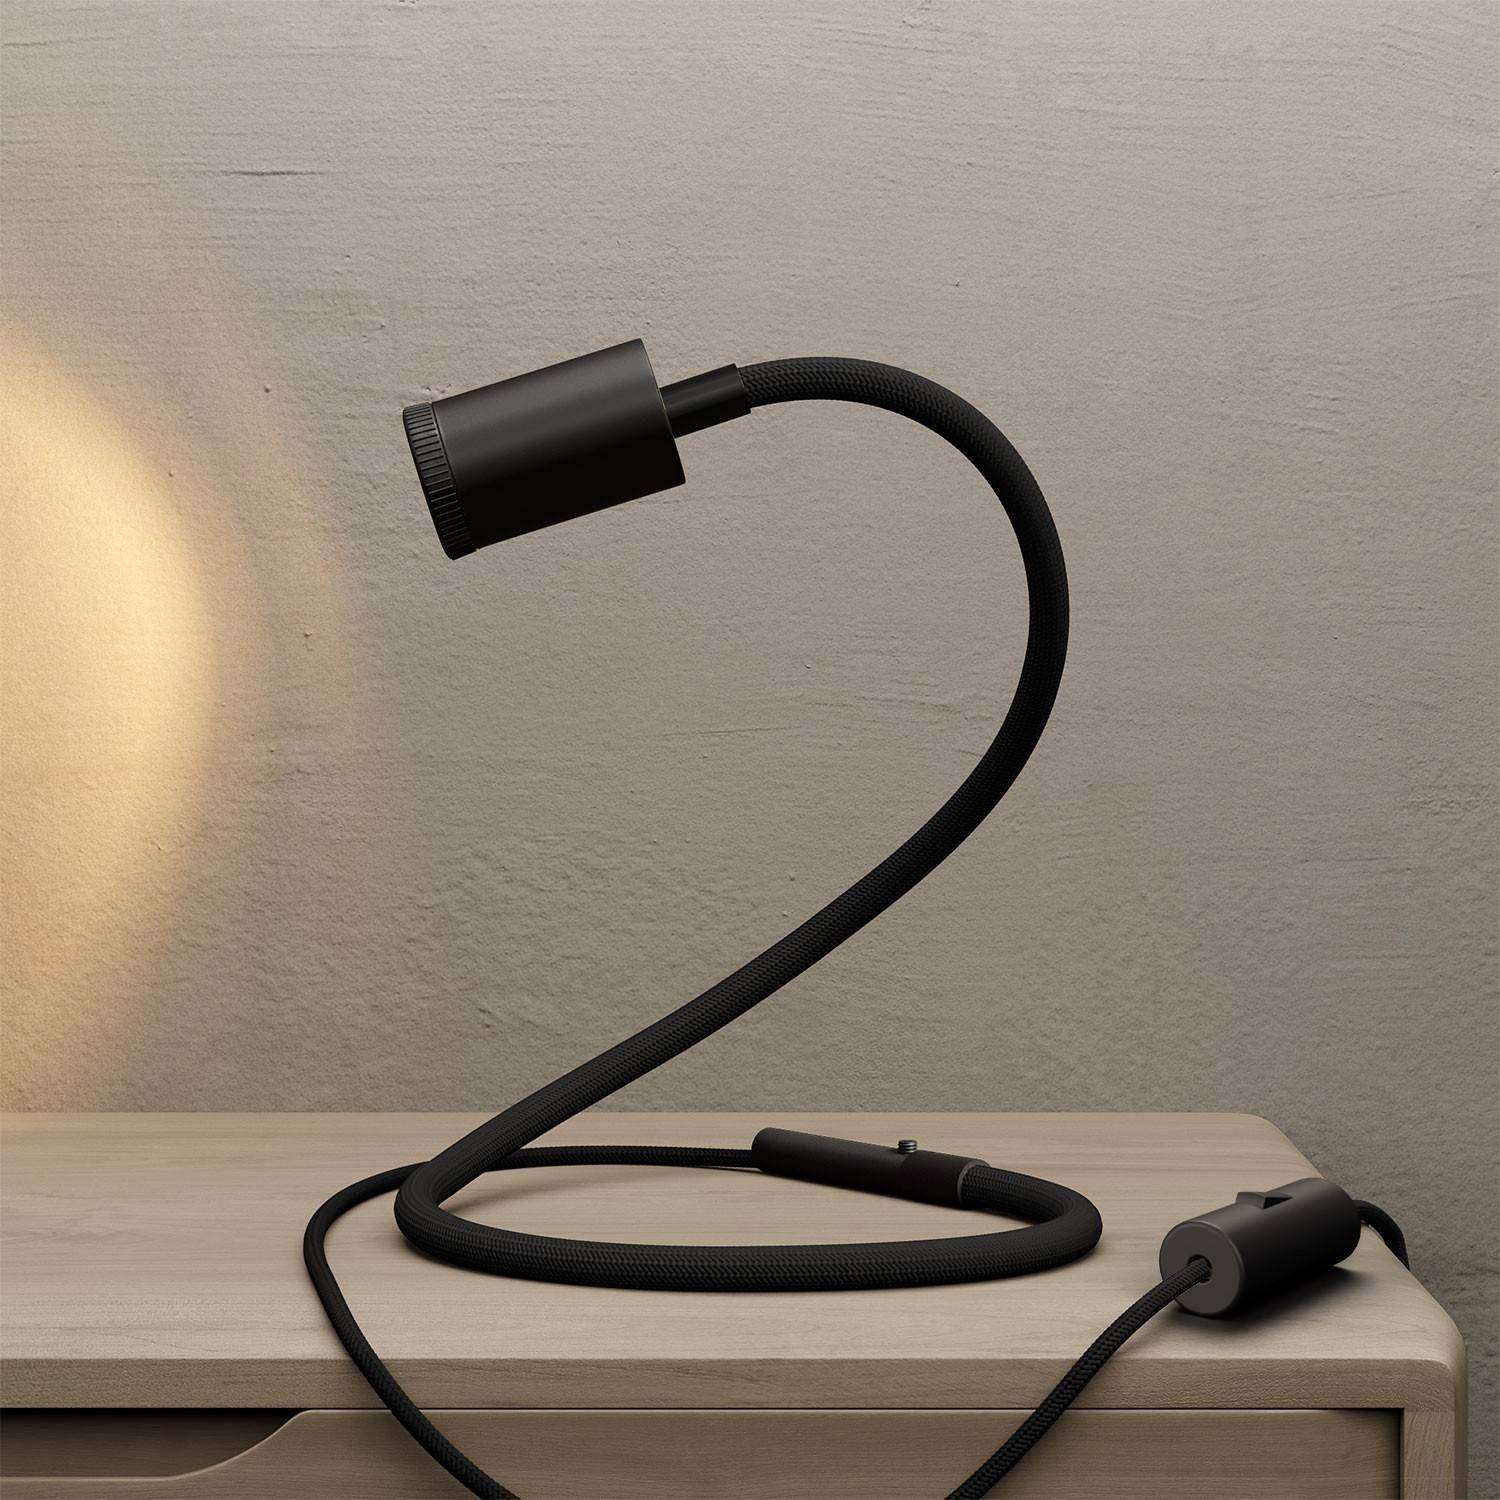 Lampă flexibilă GU1d fără bază, cu mini spot LED.